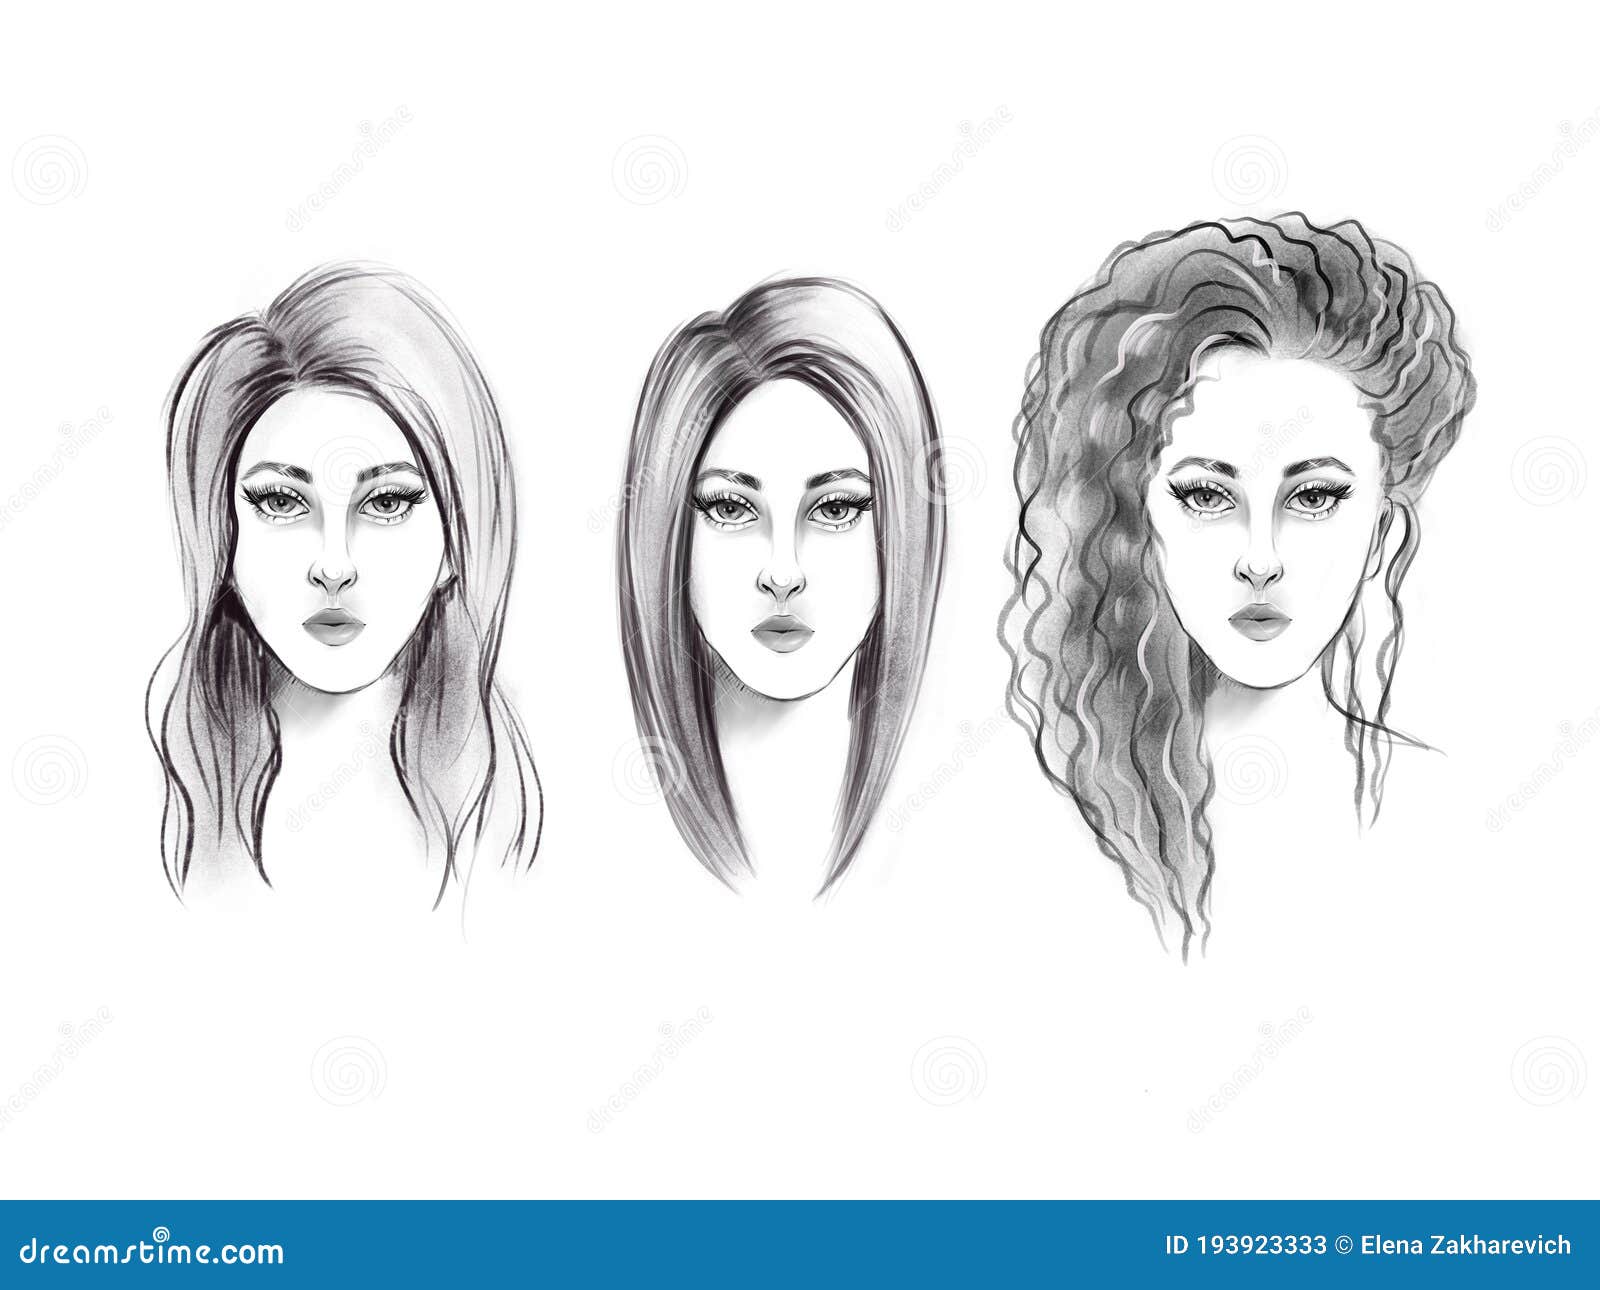 Tres Chicas Con Peinados Diferentes Boceto En Blanco Y Negro Stock De Ilustracion Ilustracion De Muchacha Peinado 193923333